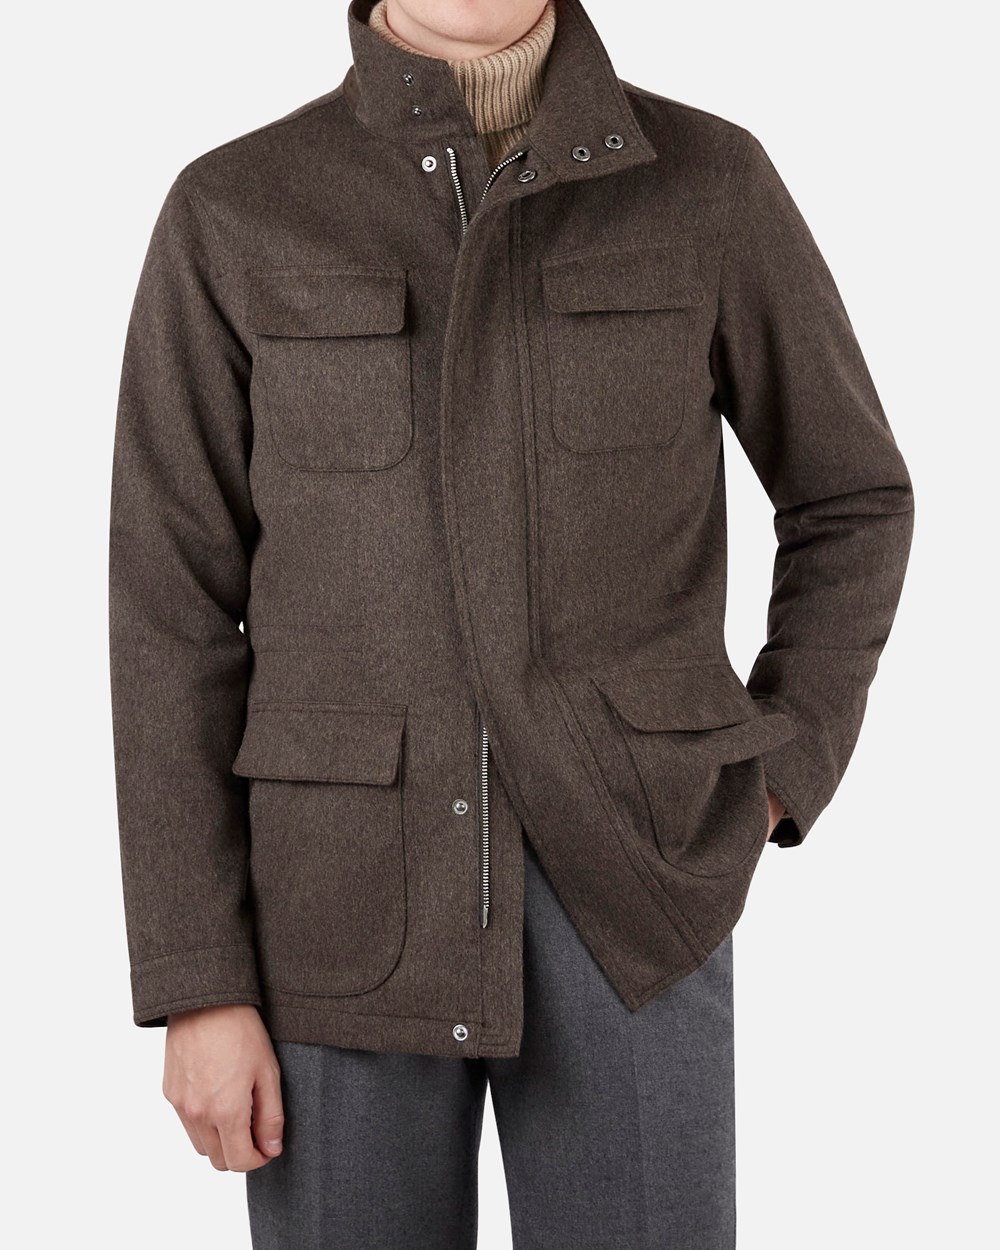 Winter Wool Cashmere Field Jacket